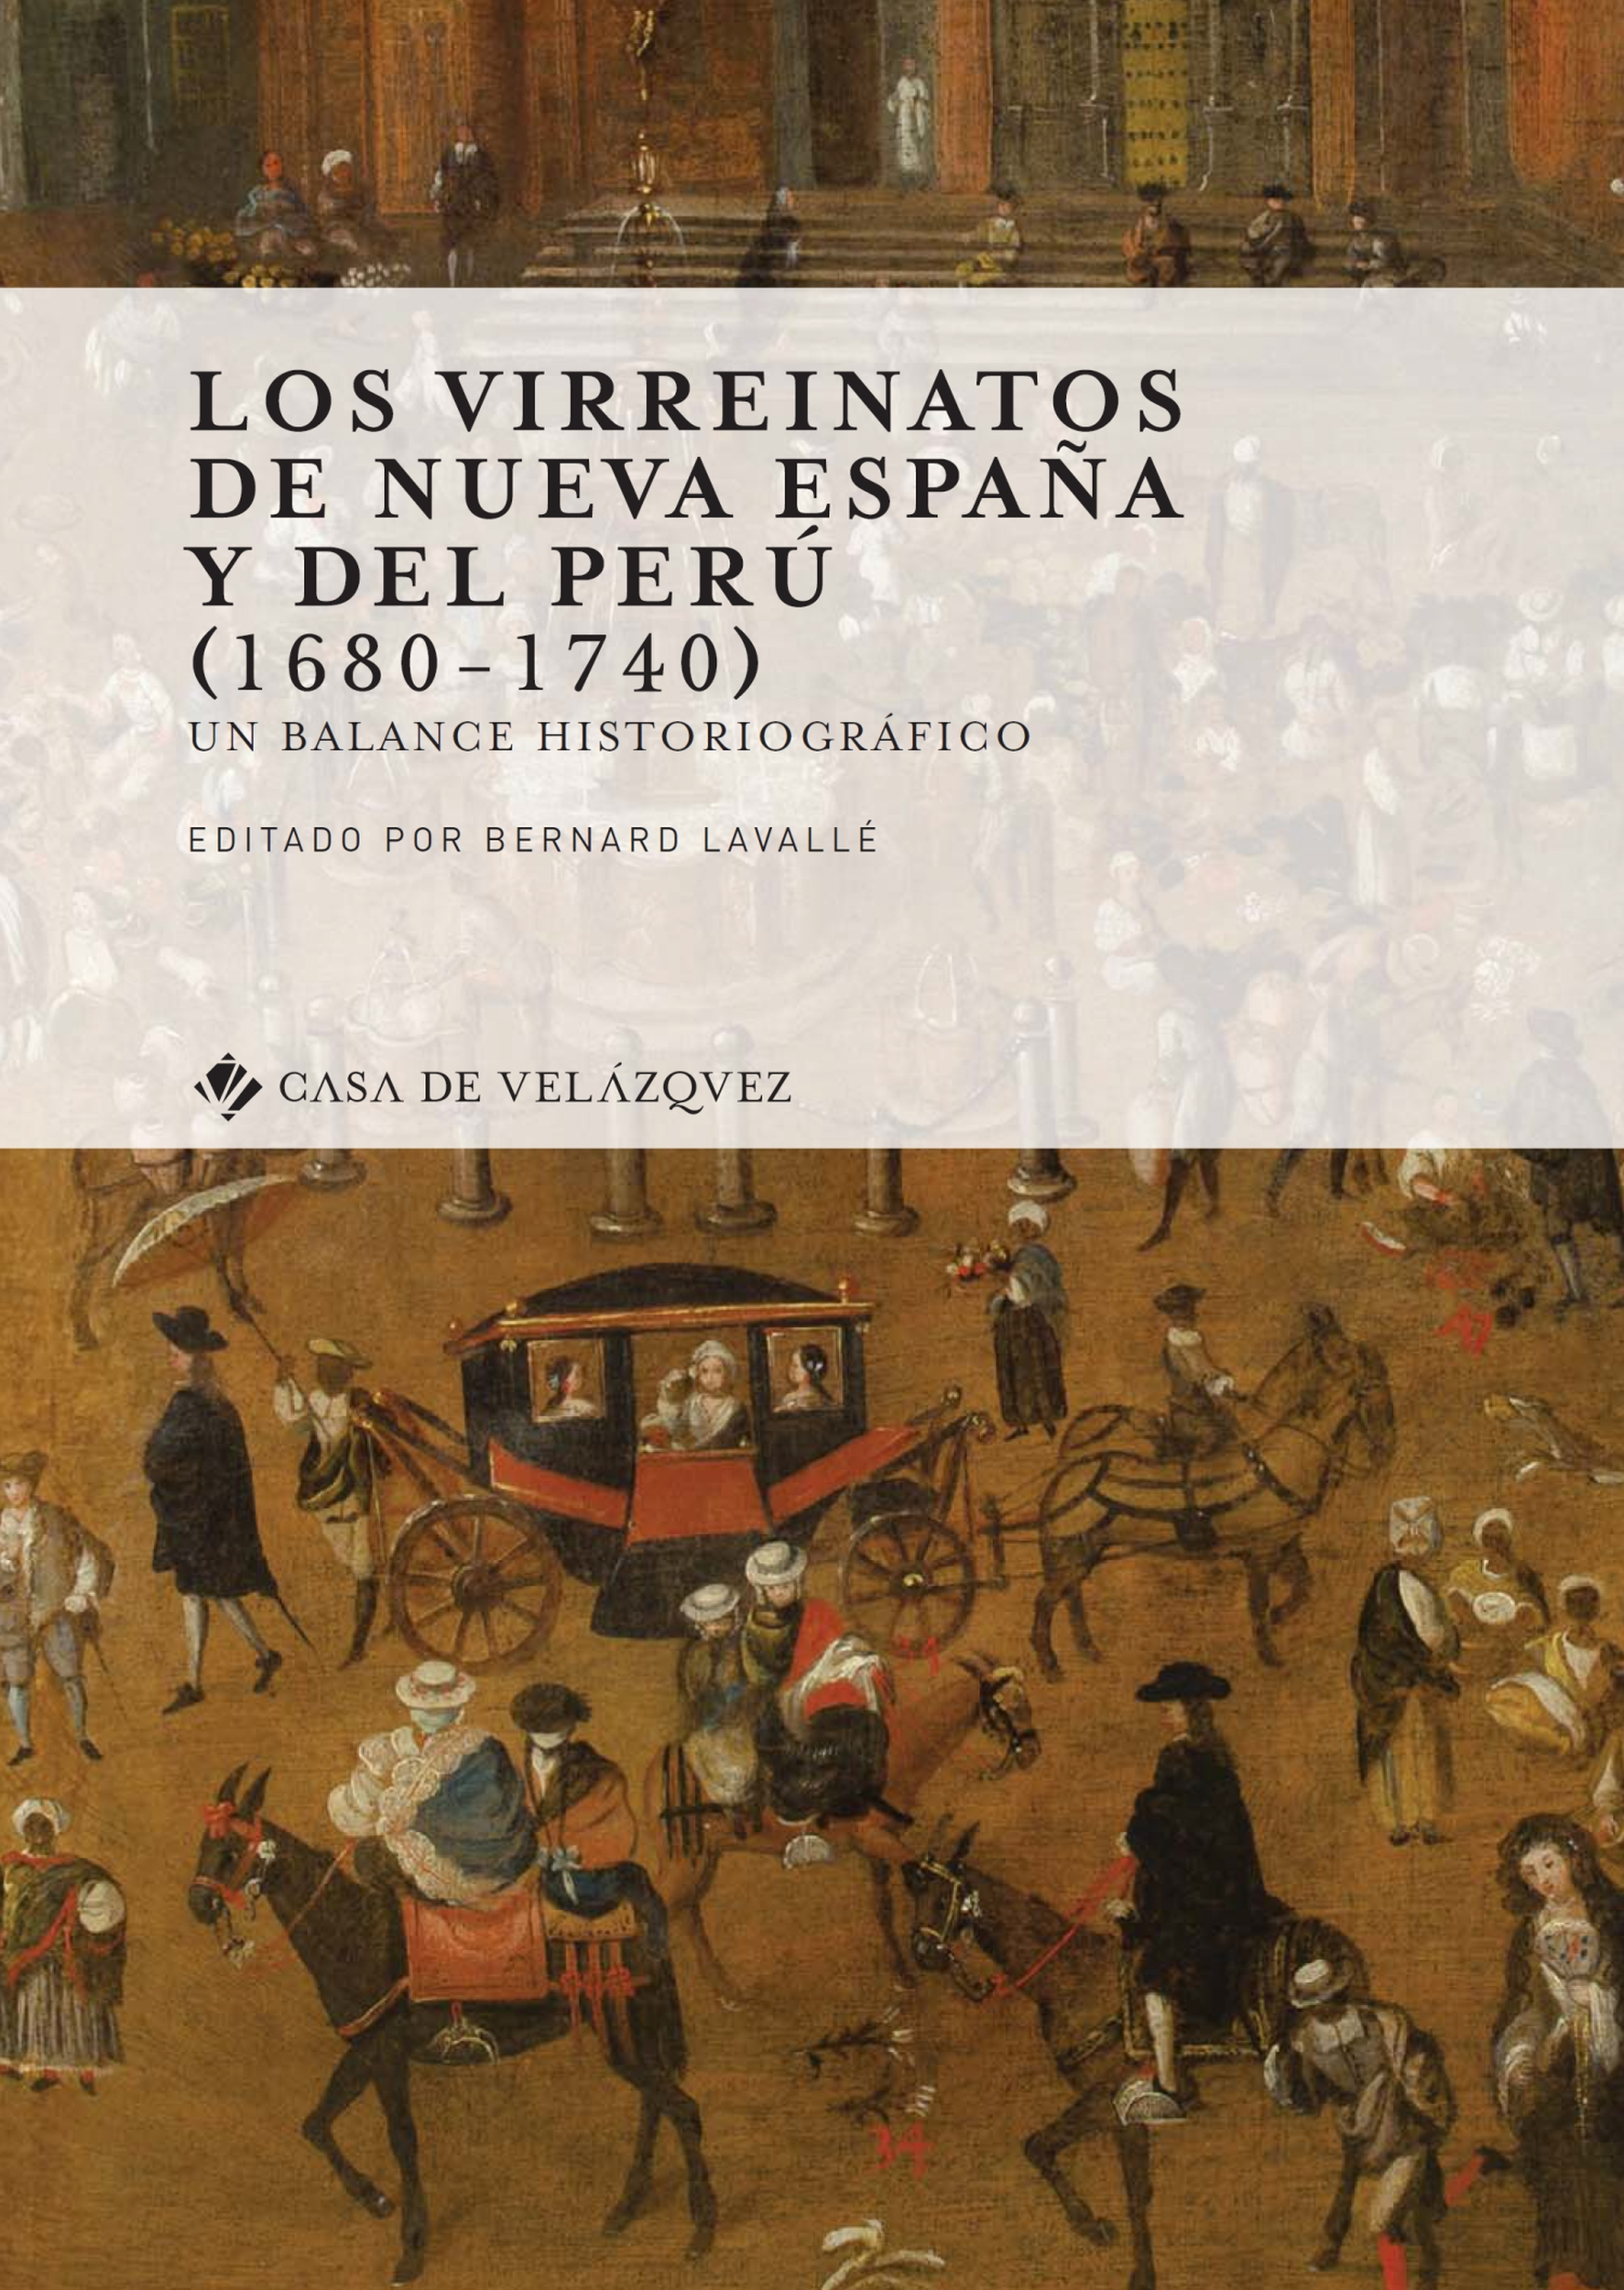 Ebook Los virreinatos de Nueva España y del Perú (1680-1740) - Un